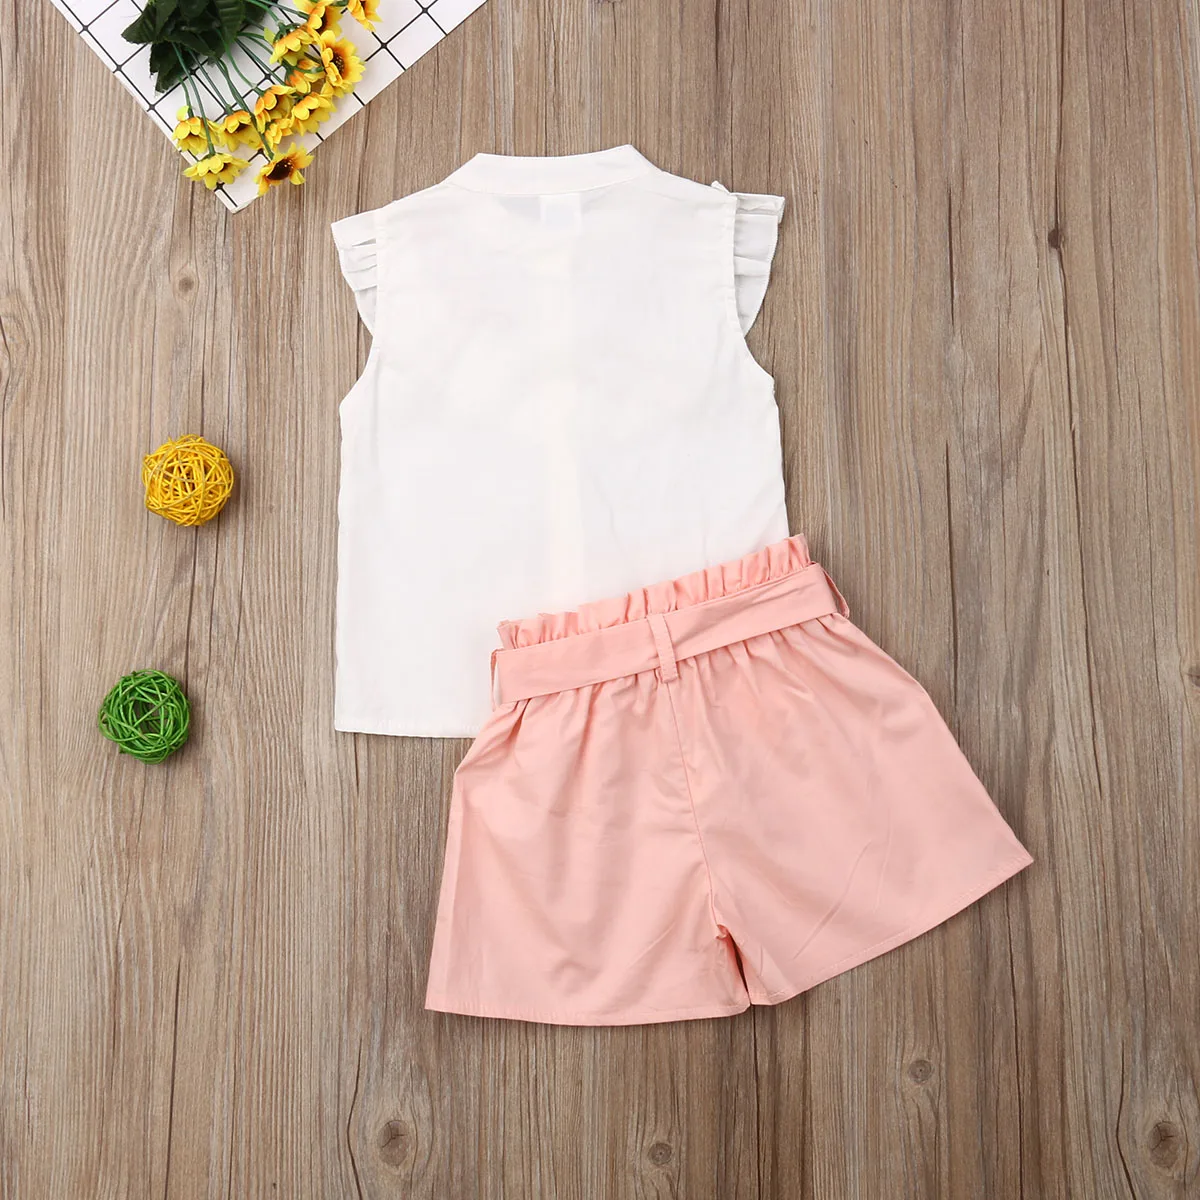 Комплект одежды для девочек SUNSIOM на возраст 1-6 лет белая футболка без рукавов с